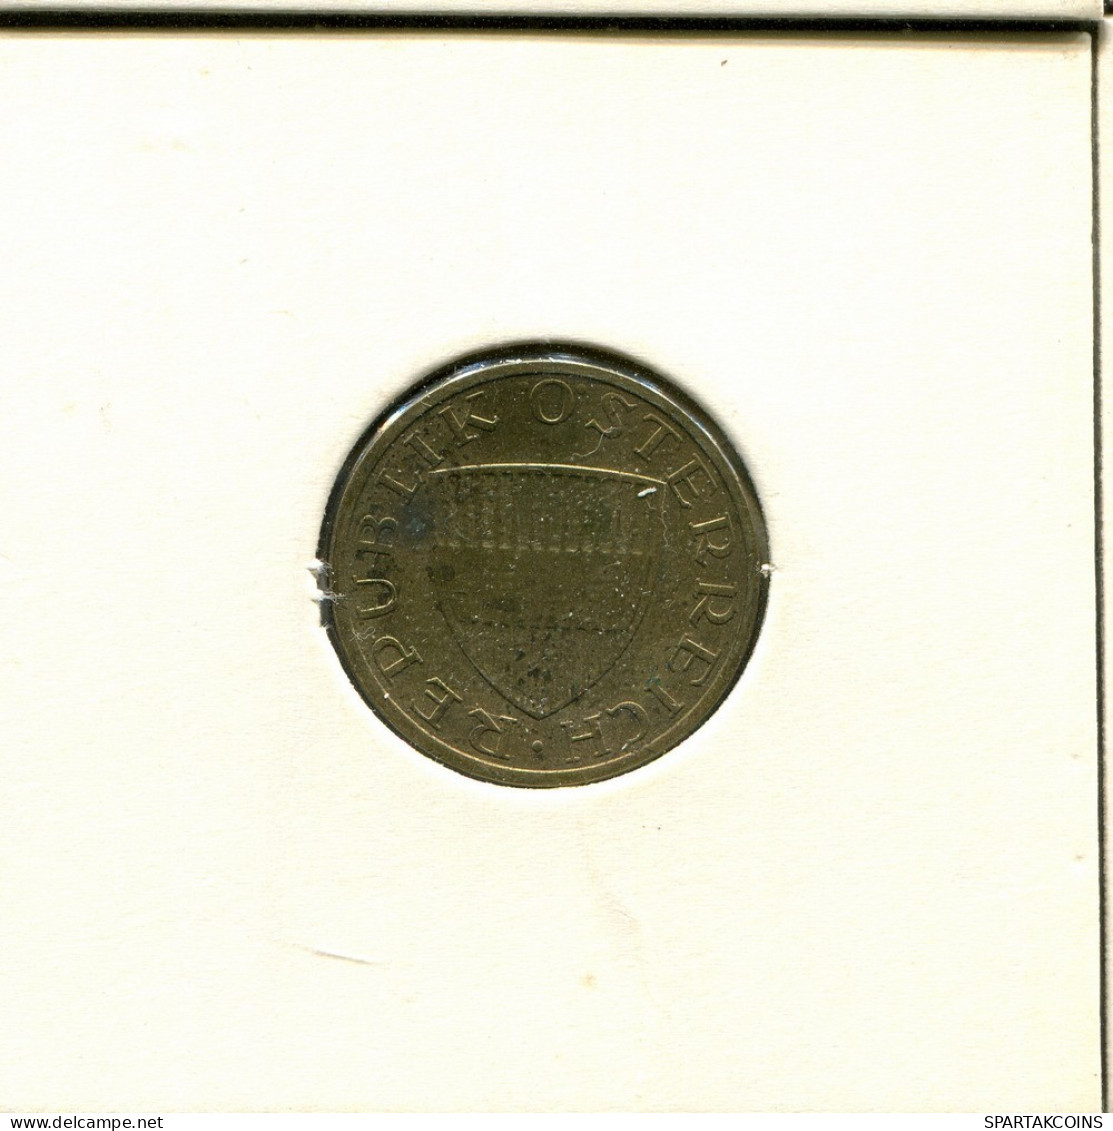 50 GROSCHEN 1982 AUSTRIA Coin #AV062.U.A - Oesterreich